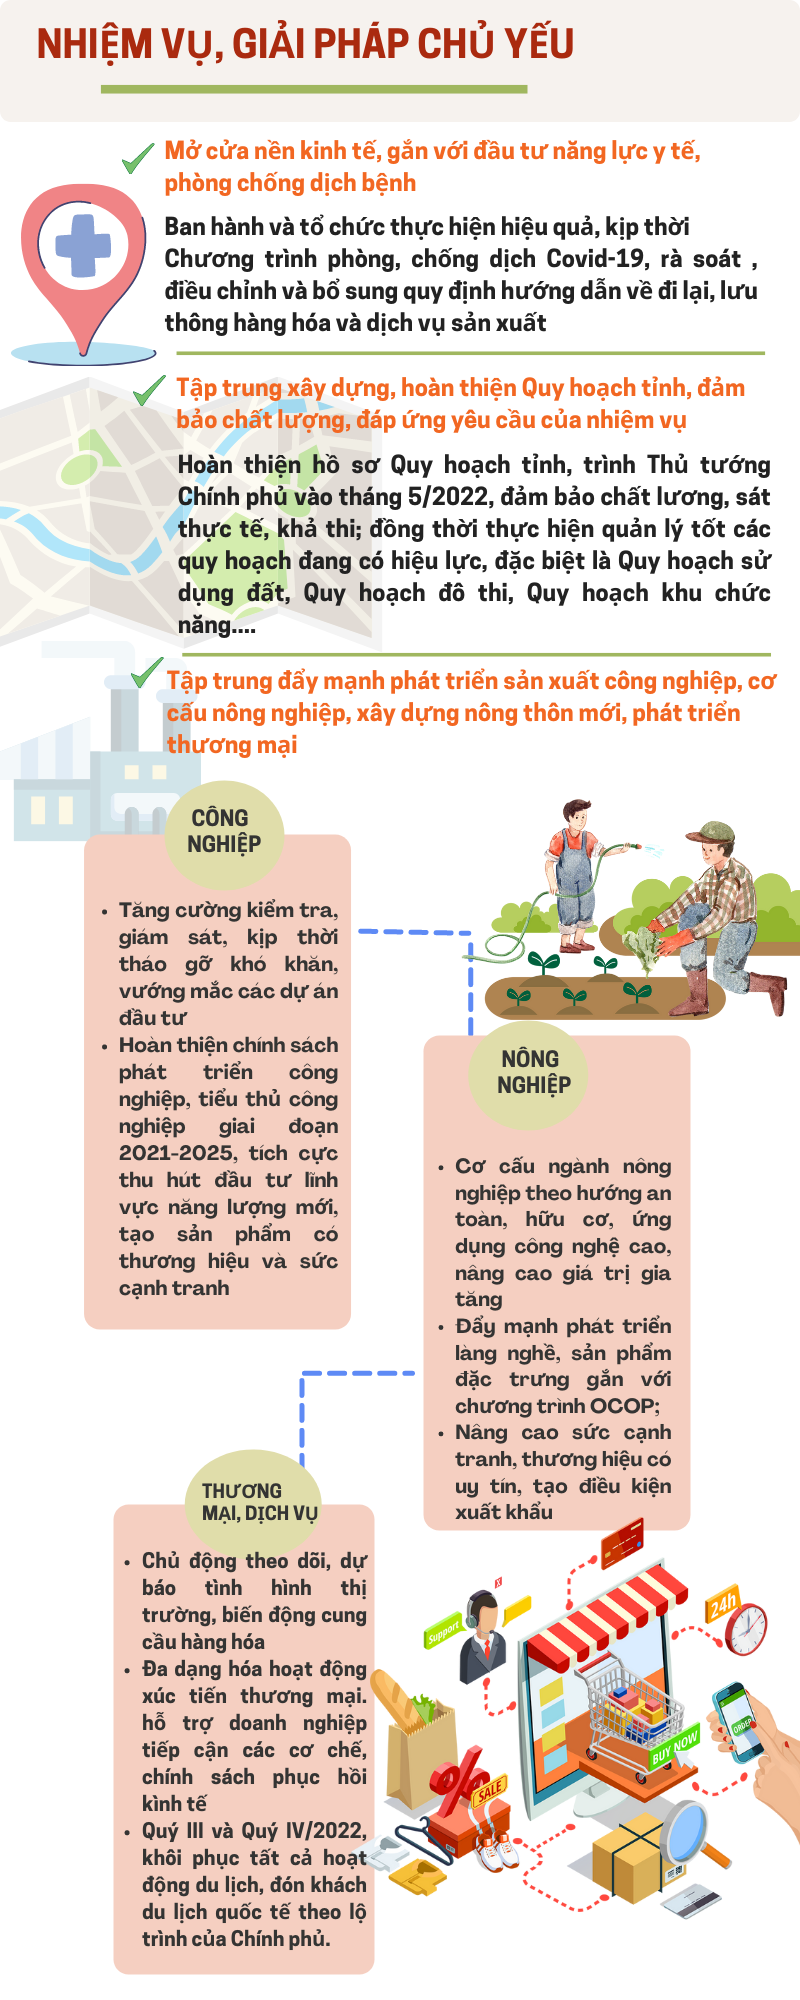 [Infographic]  Kế hoạch triển khai chương trình phục hồi và phát triển kinh tế, xã hội tỉnh Thái Nguyên